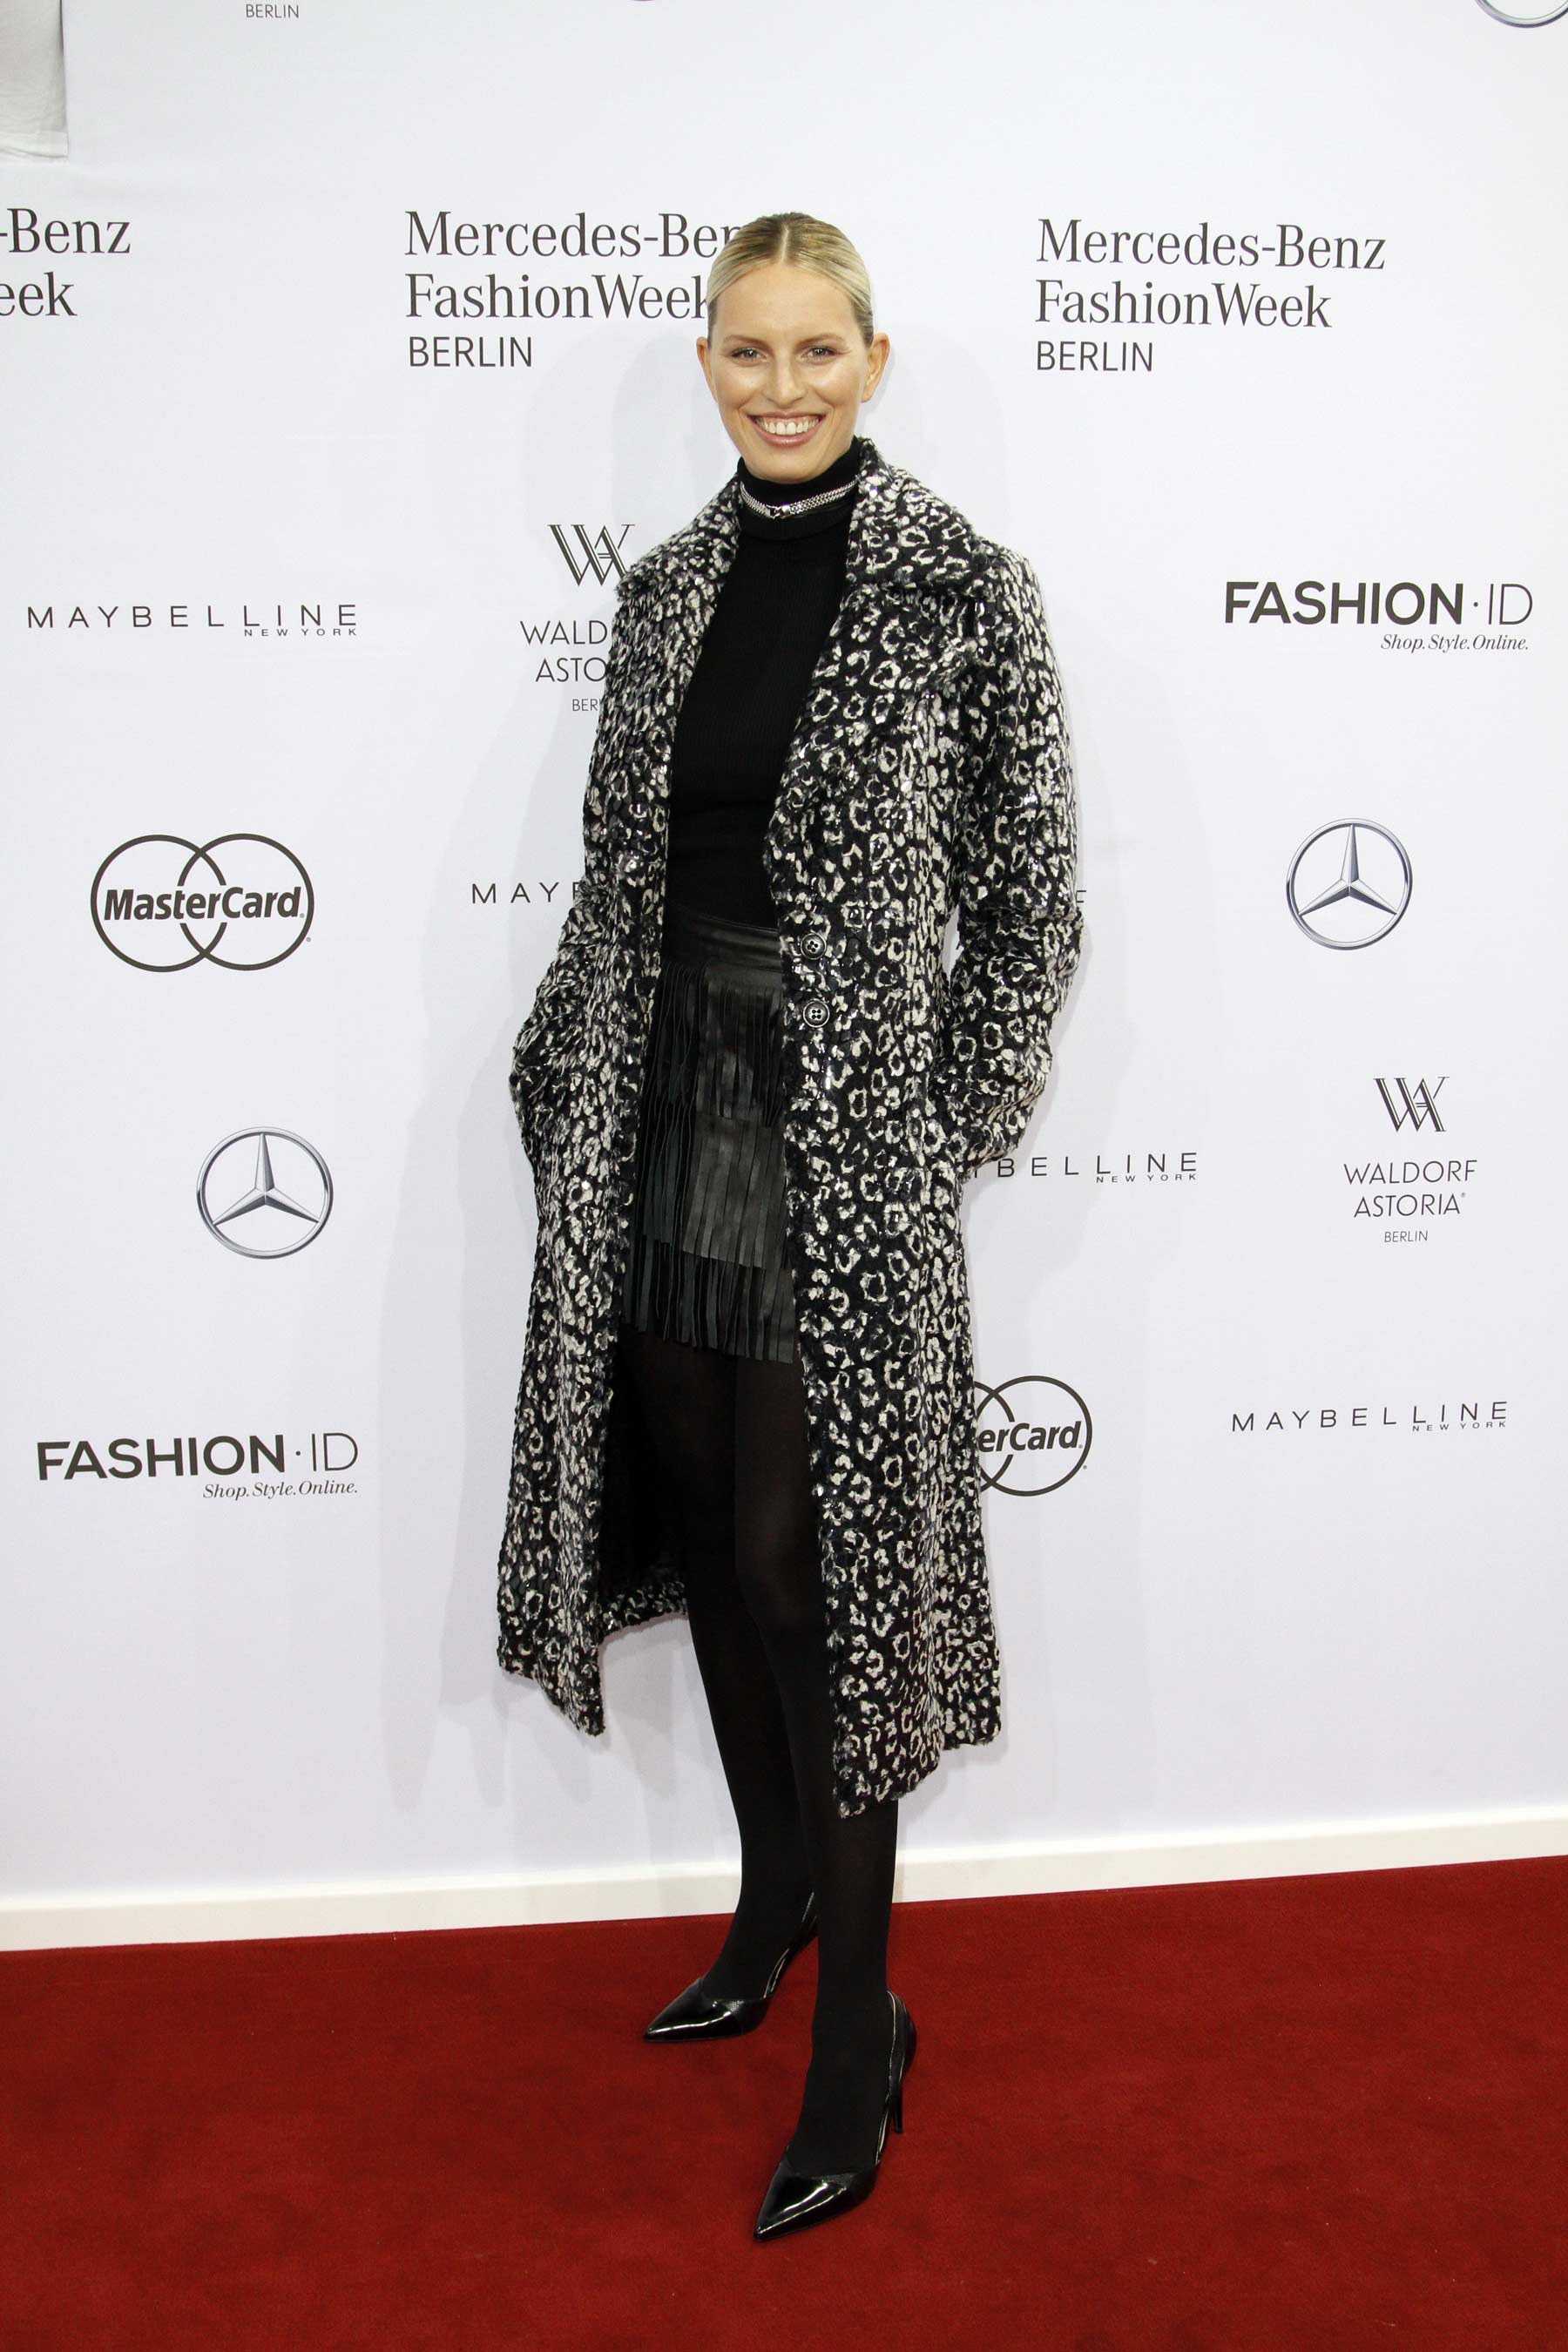 Karolina Kurkova attends Maria Kretschmer show during the Mercedes-Benz Fashion Week Berlin